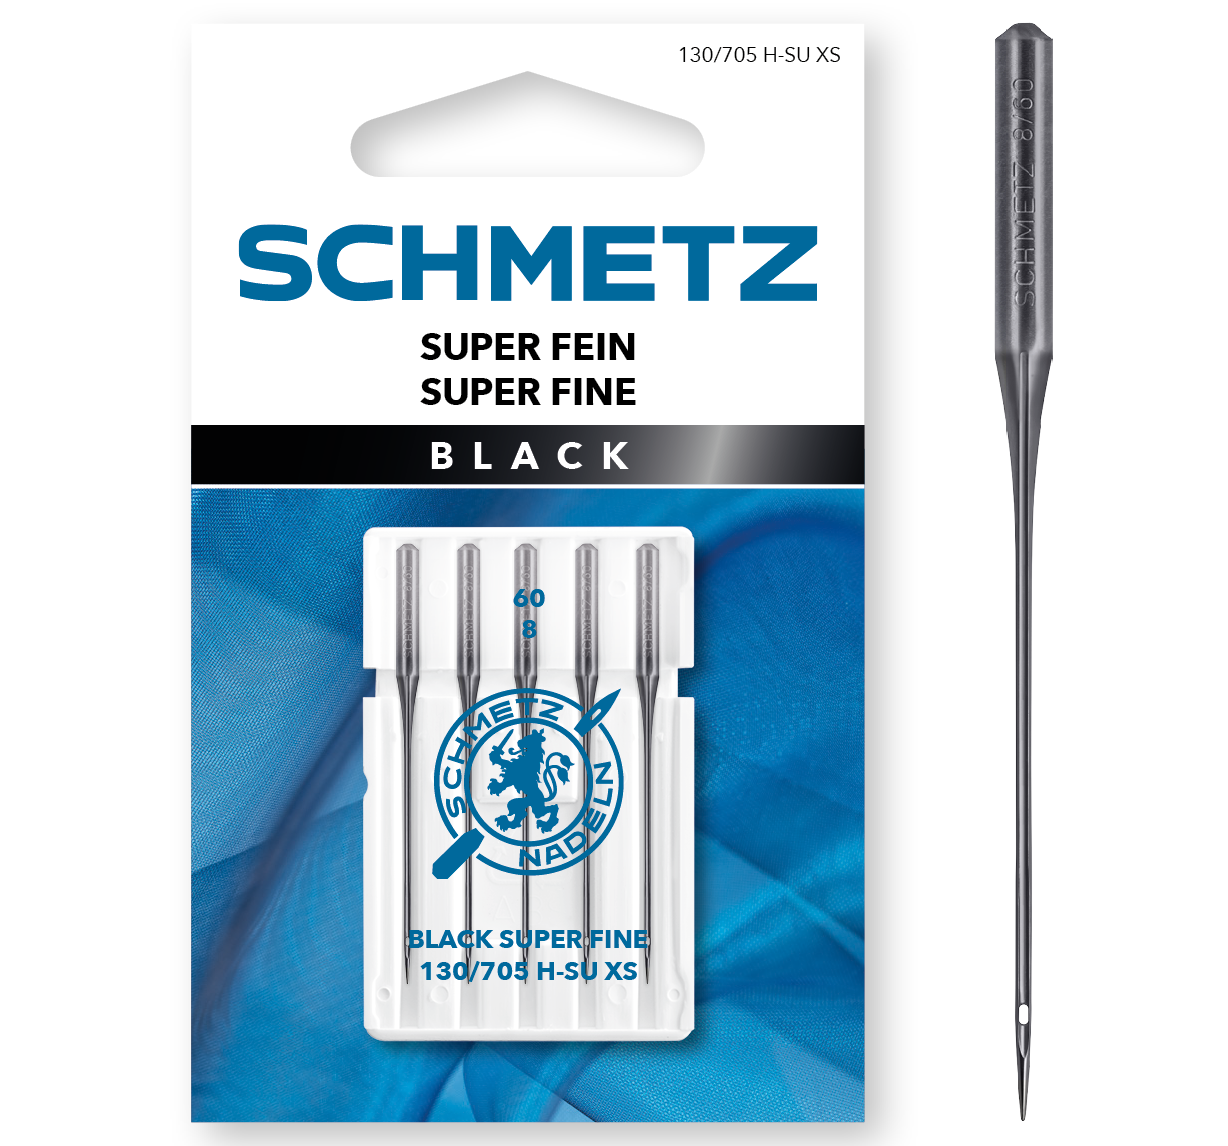 Schmetz Black Super Fine 130/705 H-SU XS 60/9 5-pack